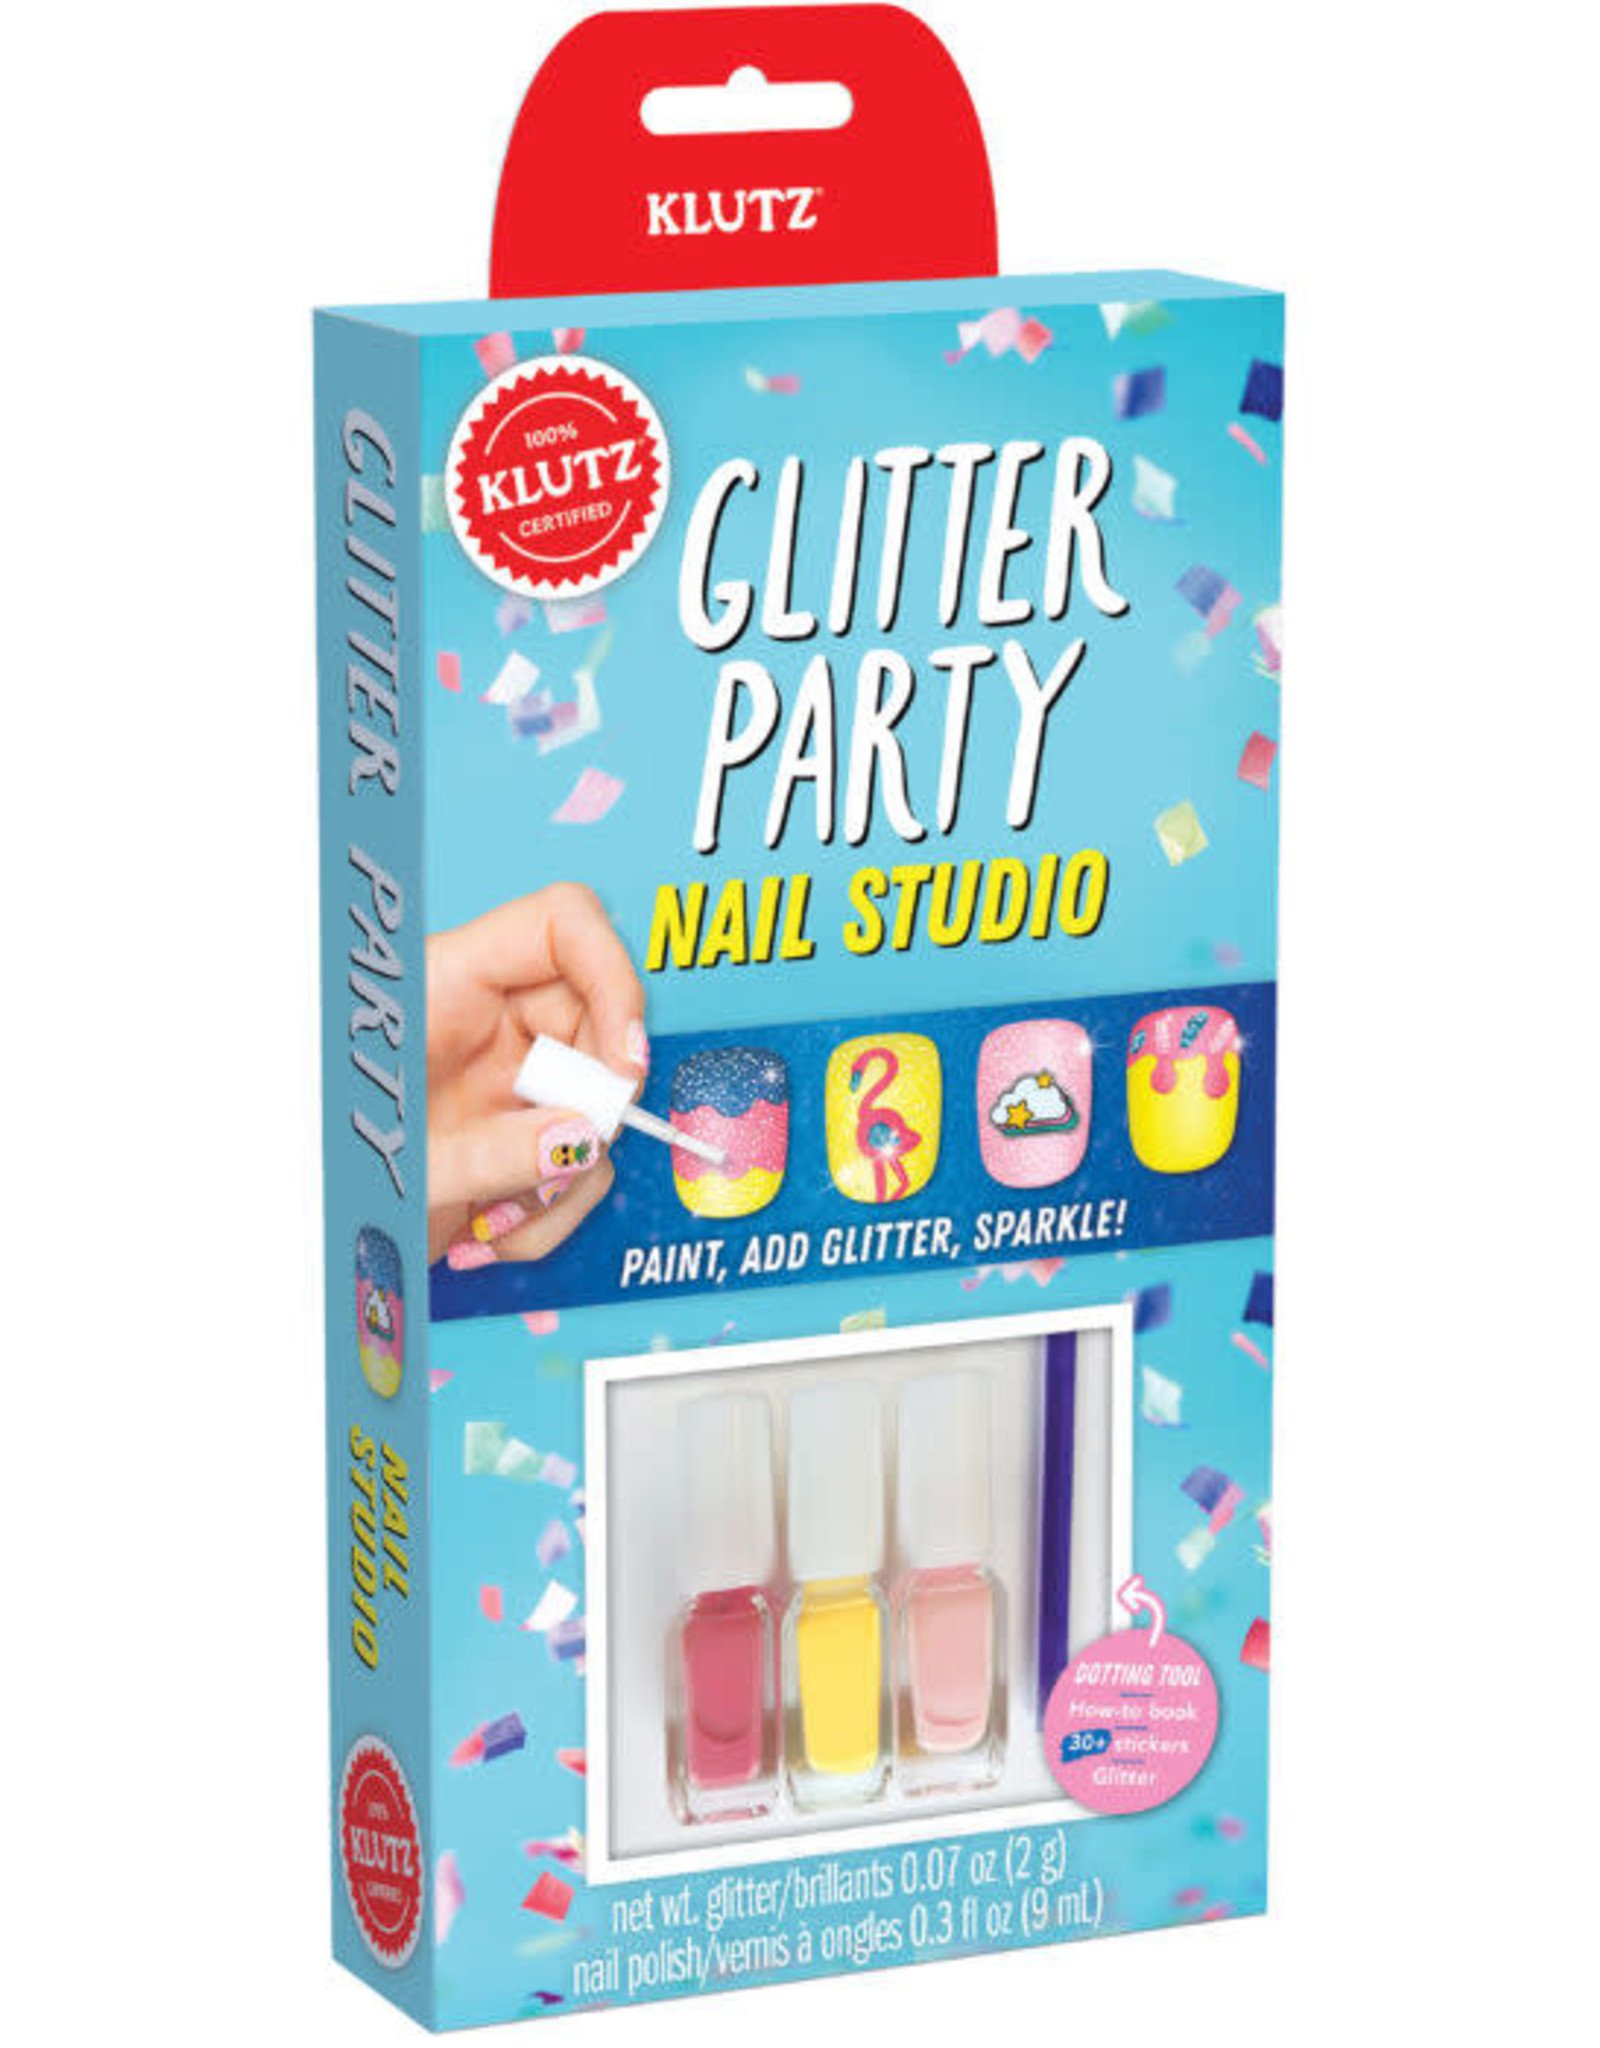 KLUTZ Glitter Party Nail Studio